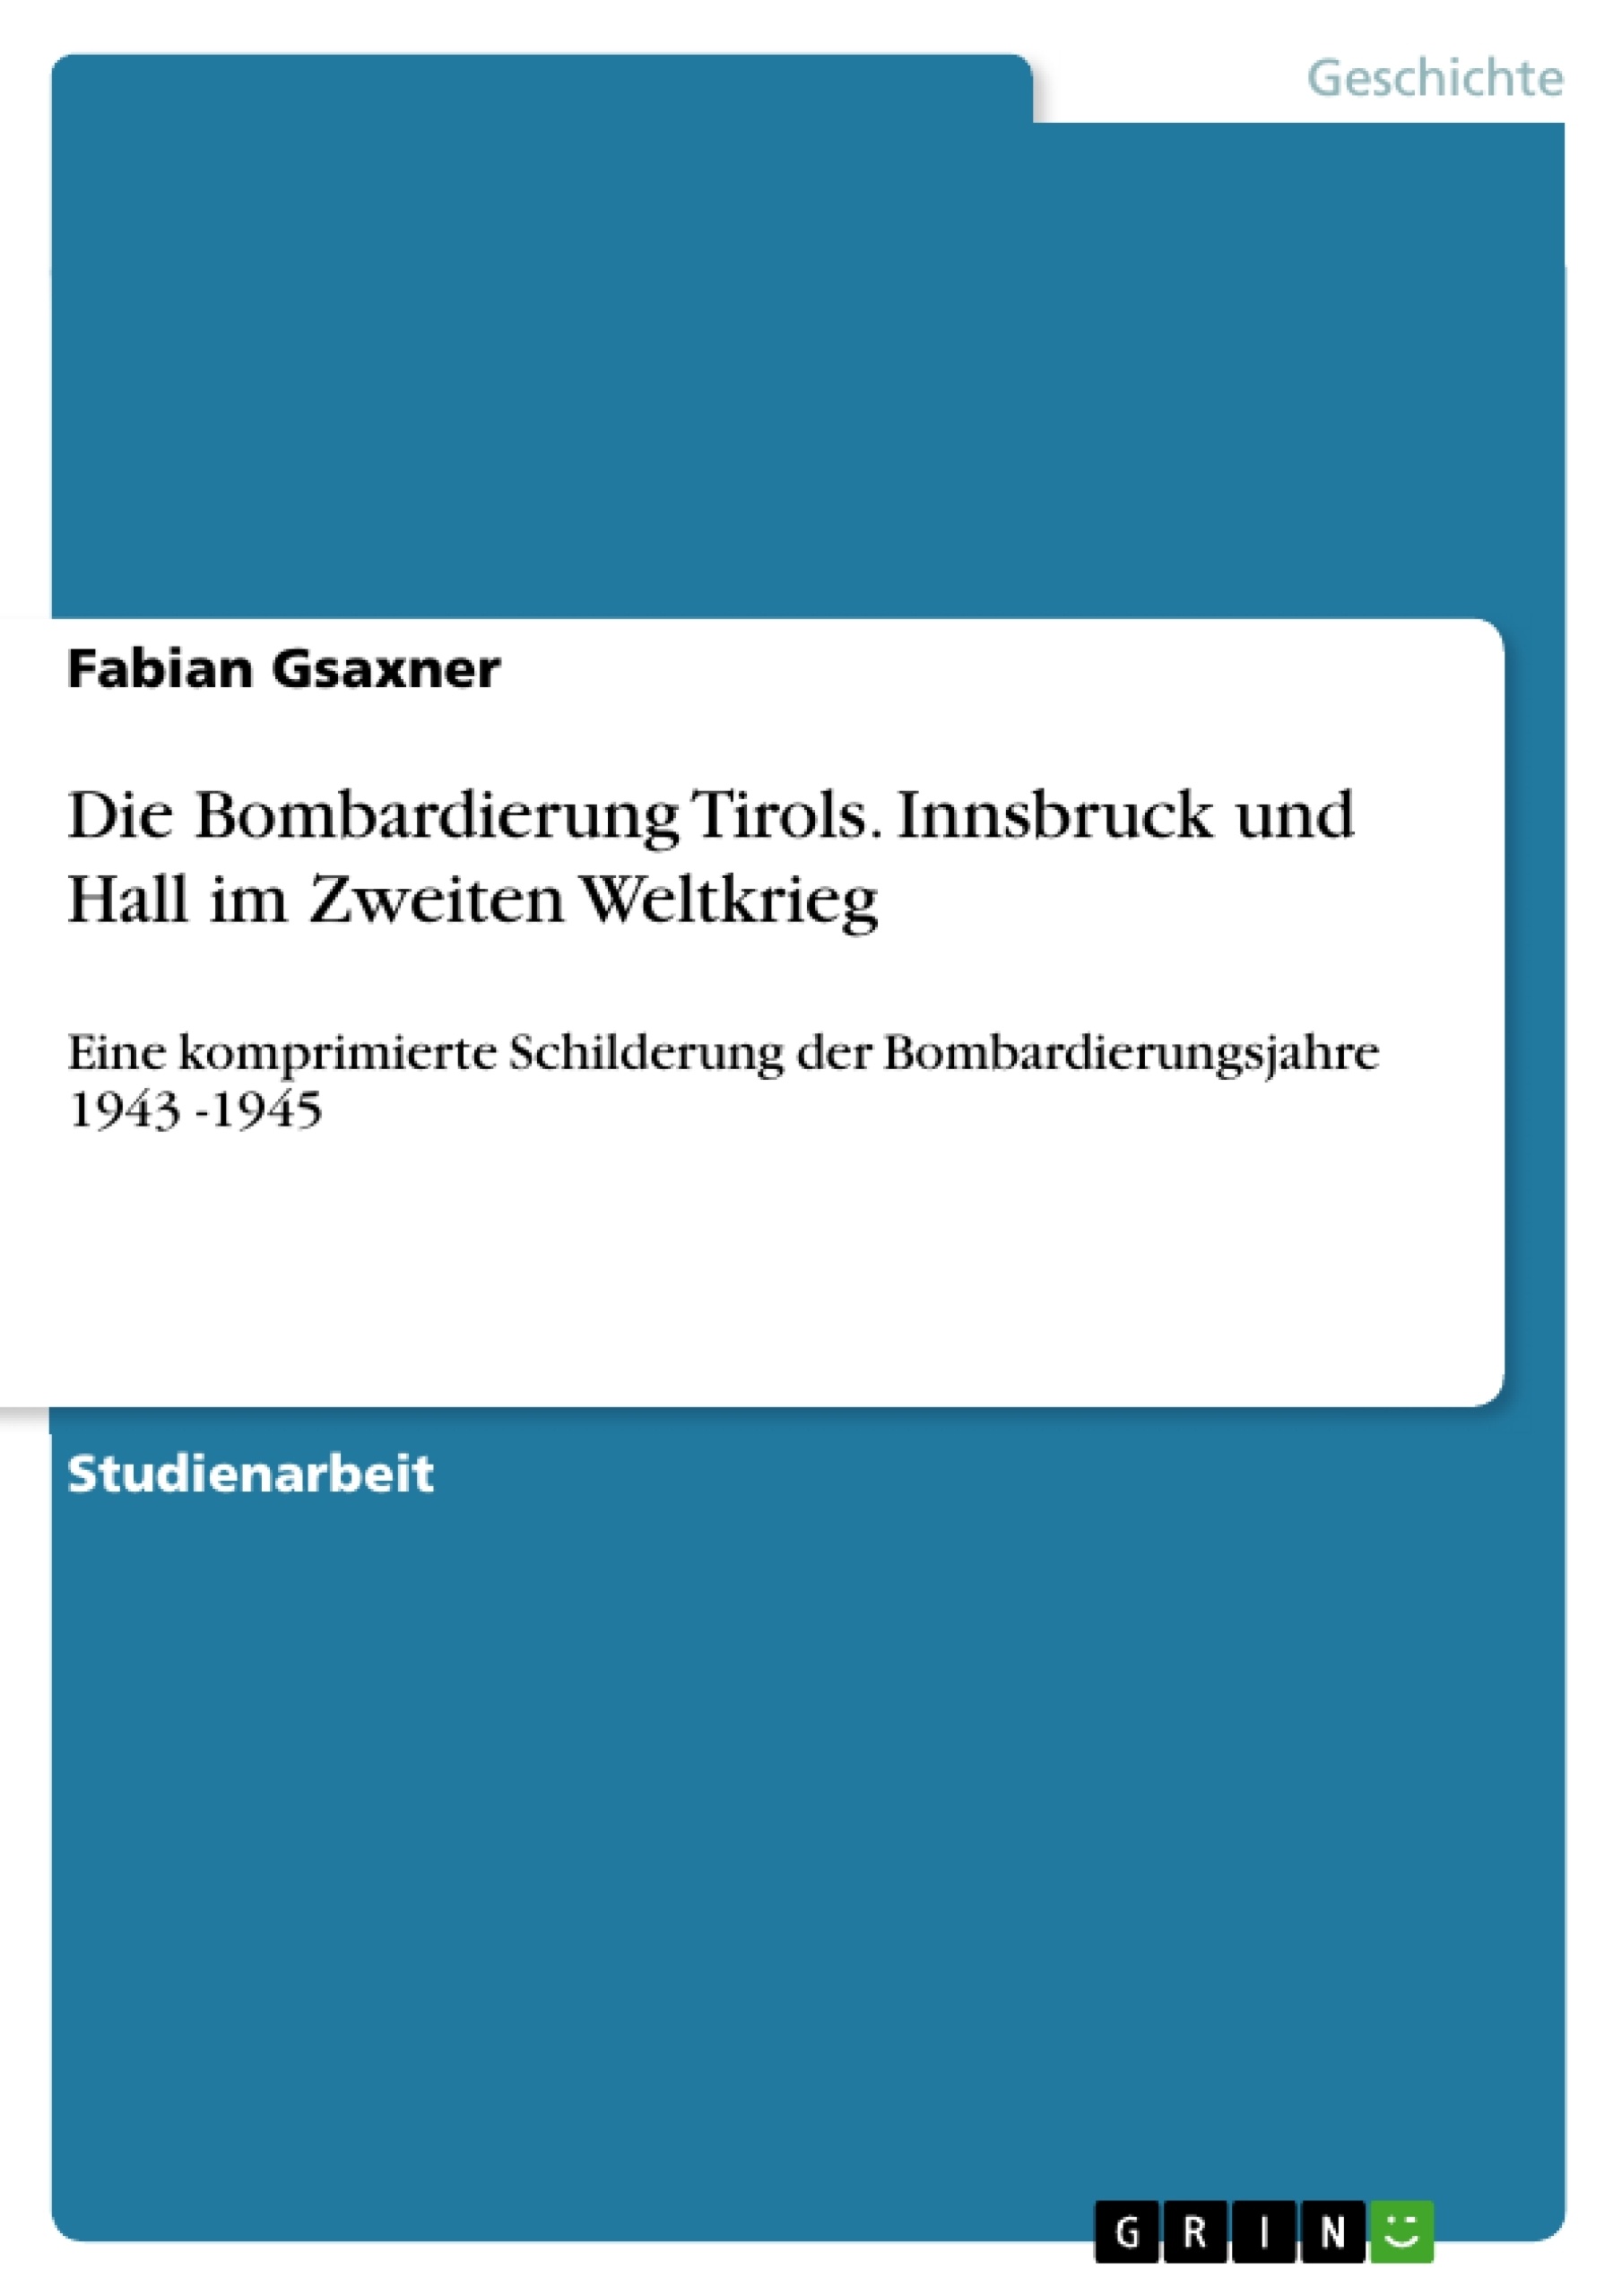 Title: Die Bombardierung Tirols. Innsbruck und Hall im Zweiten Weltkrieg